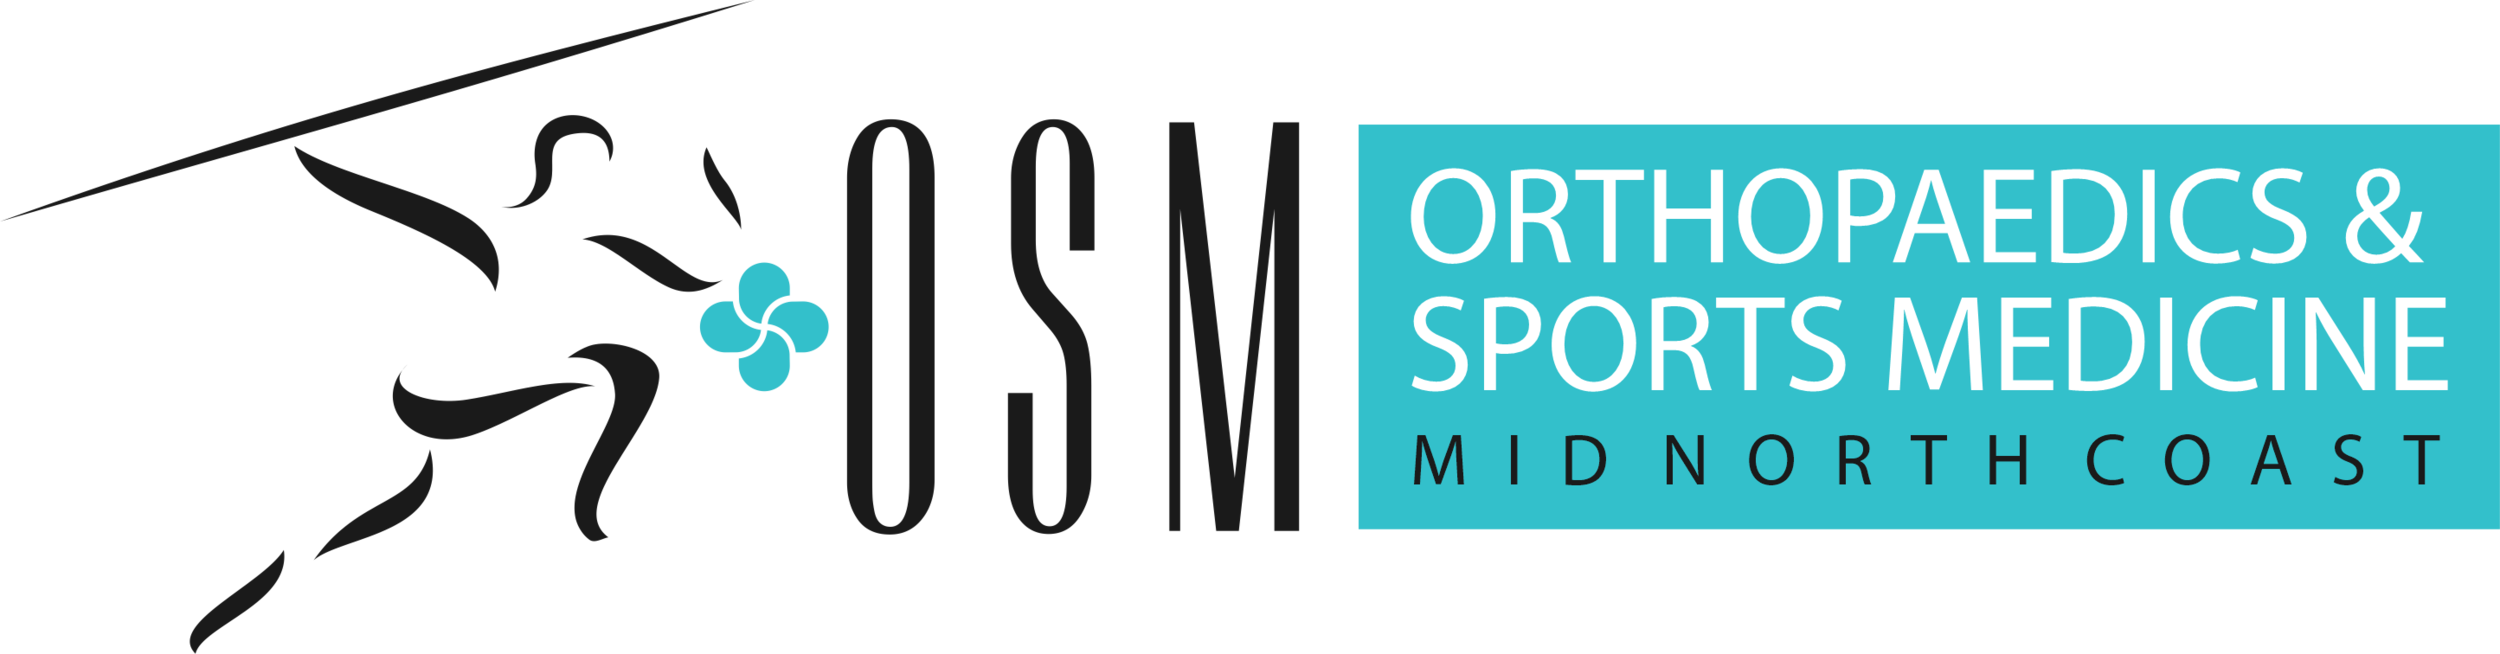 Mid North Coast Orthopedics and Sports Medicine